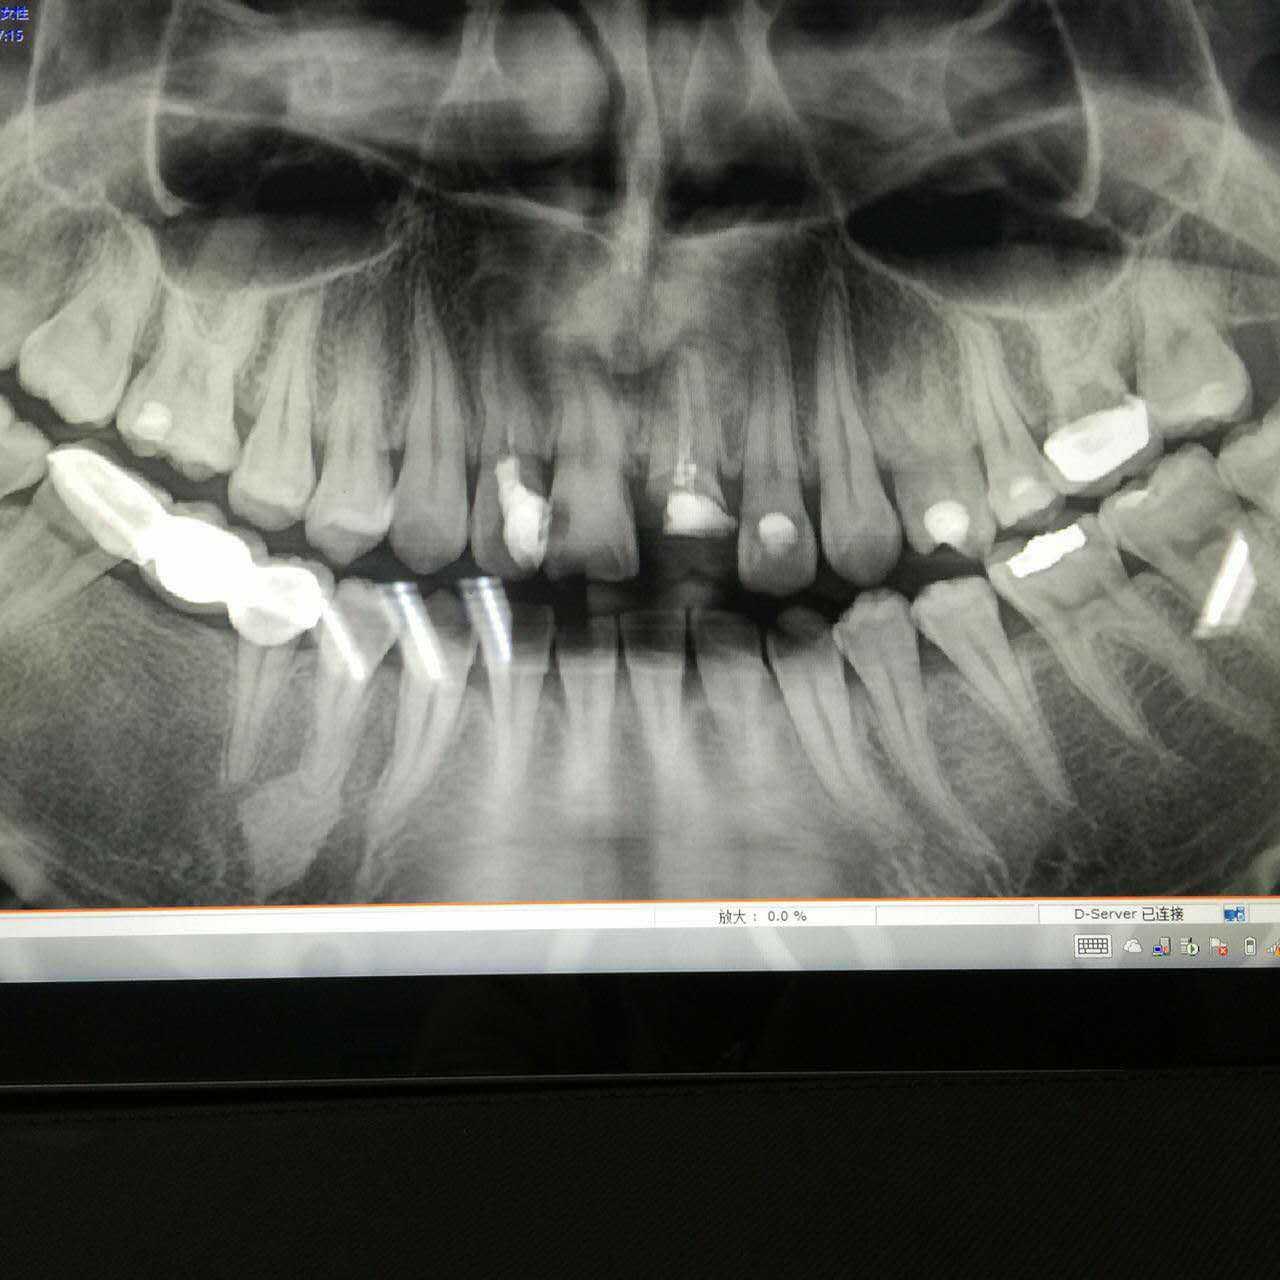 冷光牙齿美白的效果图(氟斑牙)-赵振的博客-KQ88口腔博客